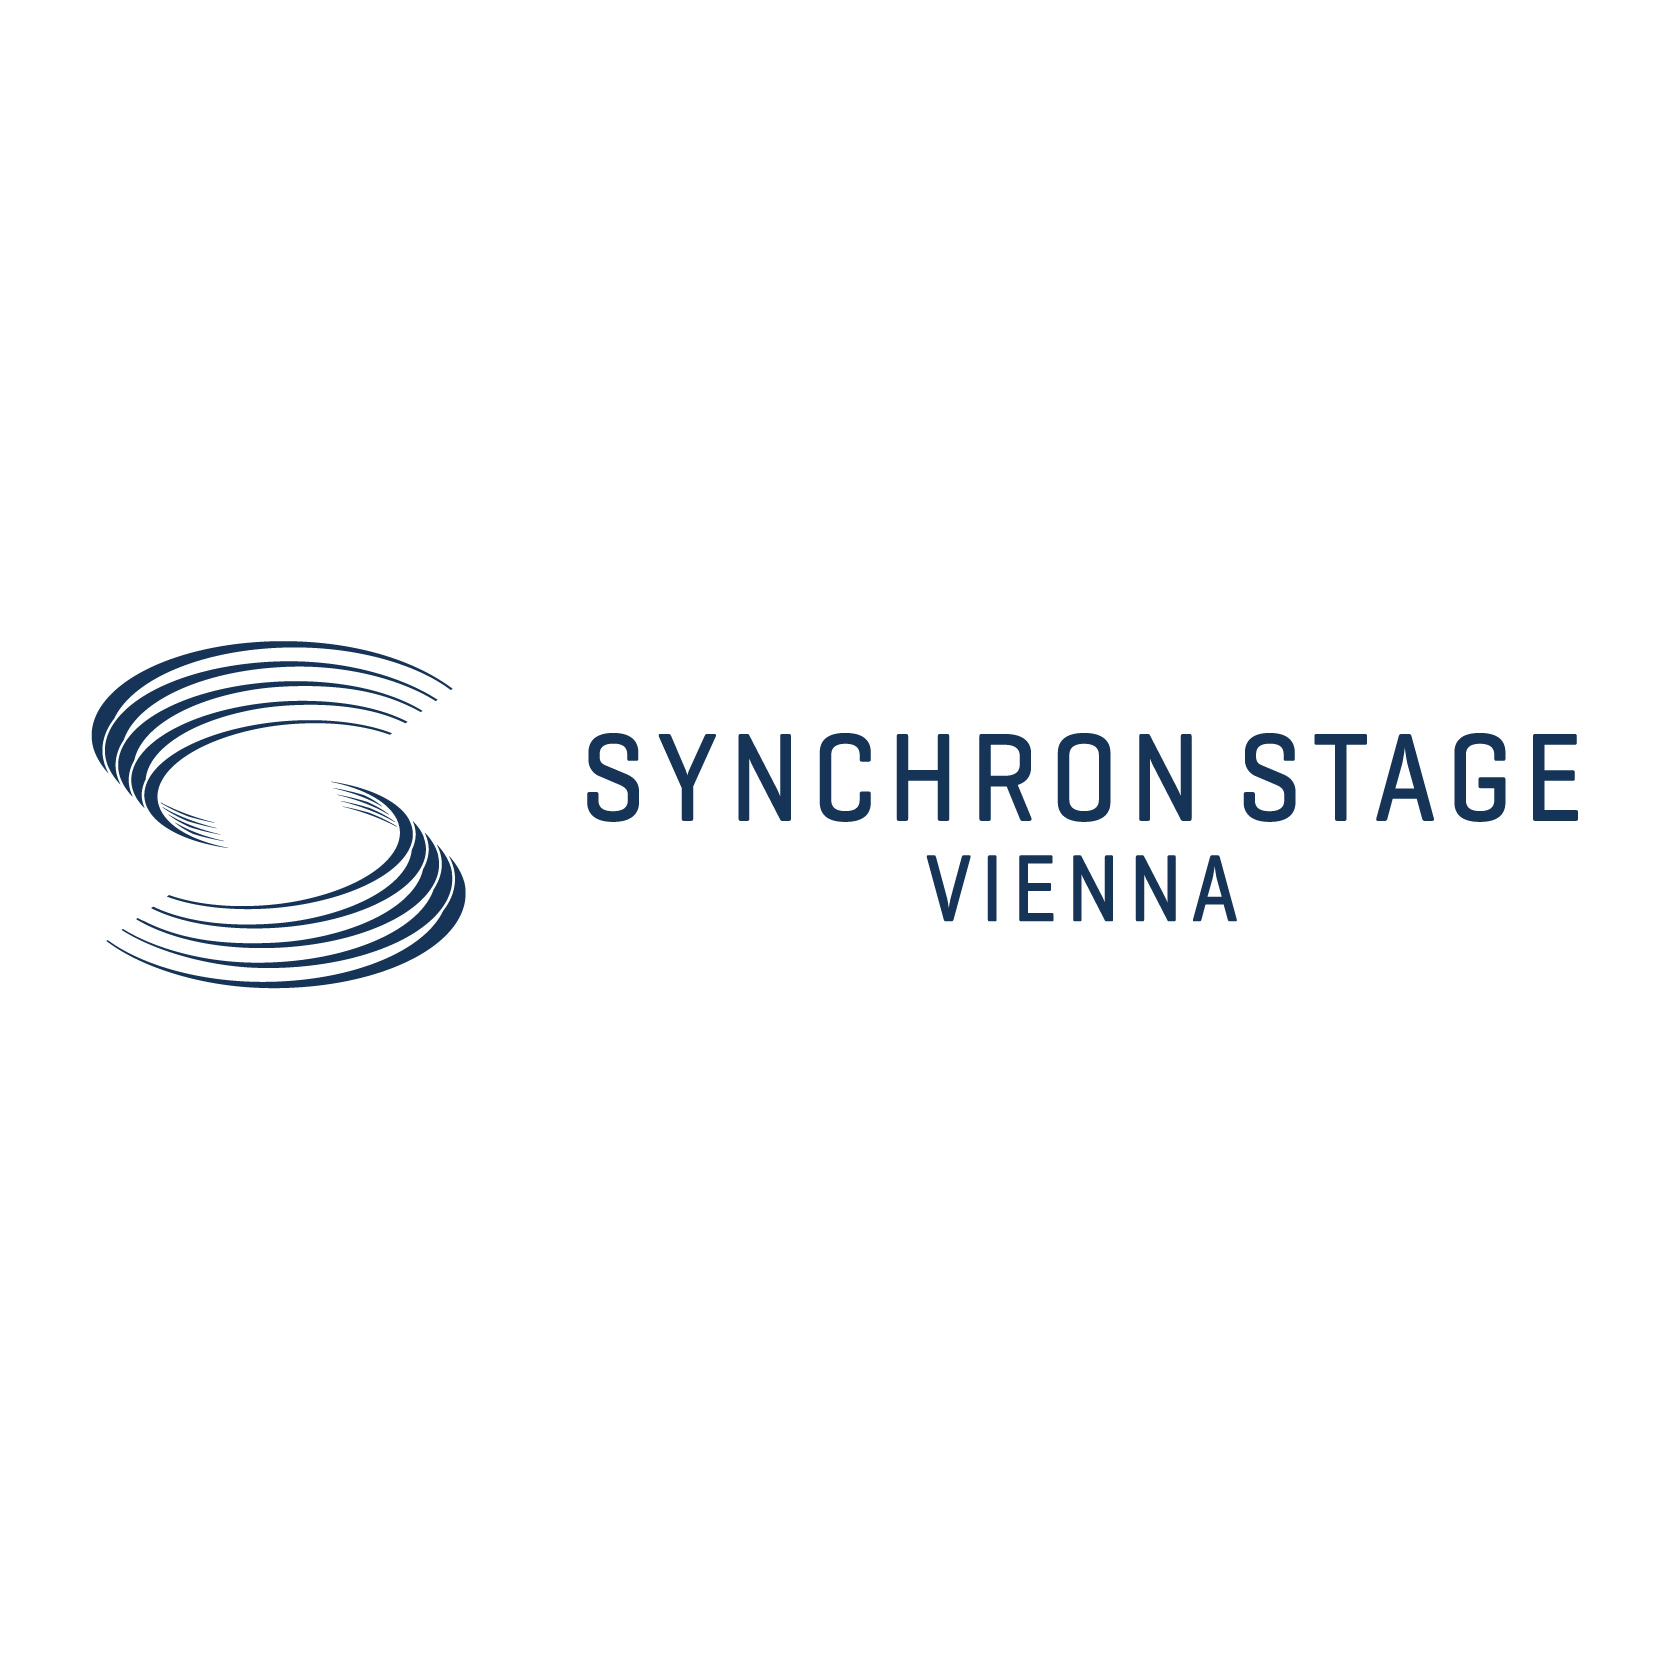 Synchron Stage Vienna Logo v1